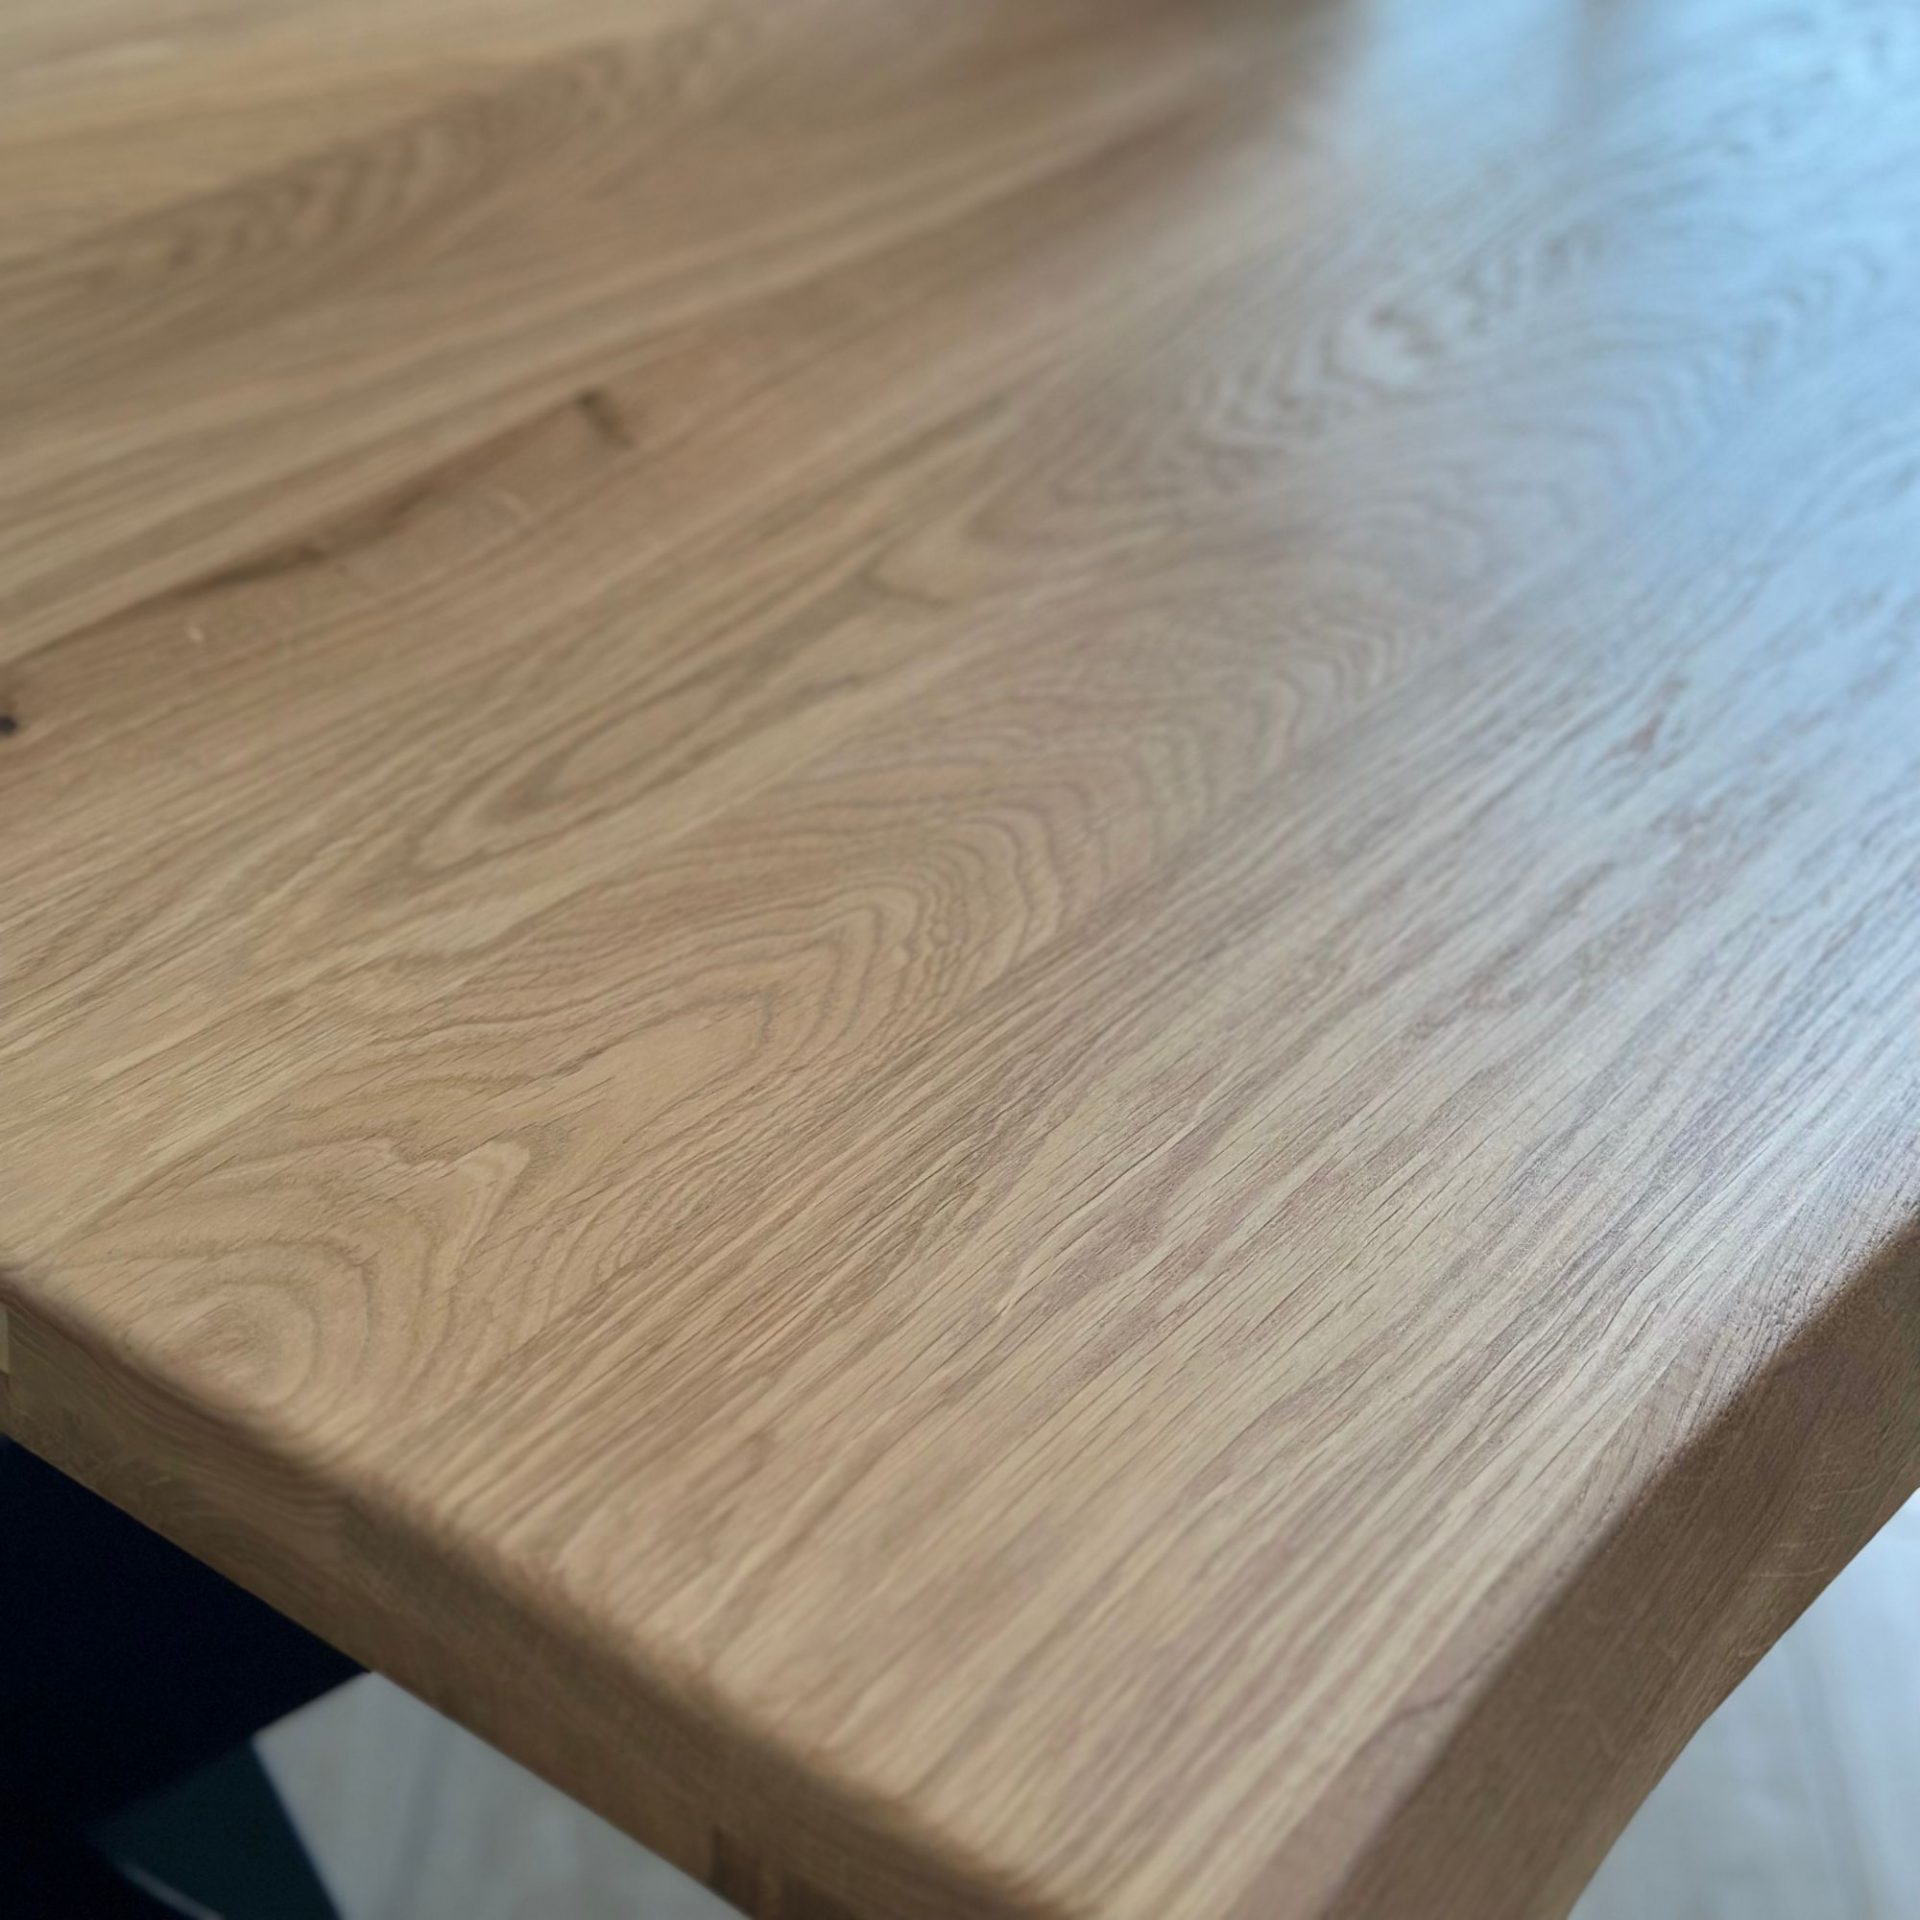 Wildeiche Massivholz Tischplatte mit Baumkante - geschliffen und natur geölt - alle Tischplatten werden in Stärke 4 cm geliefert.